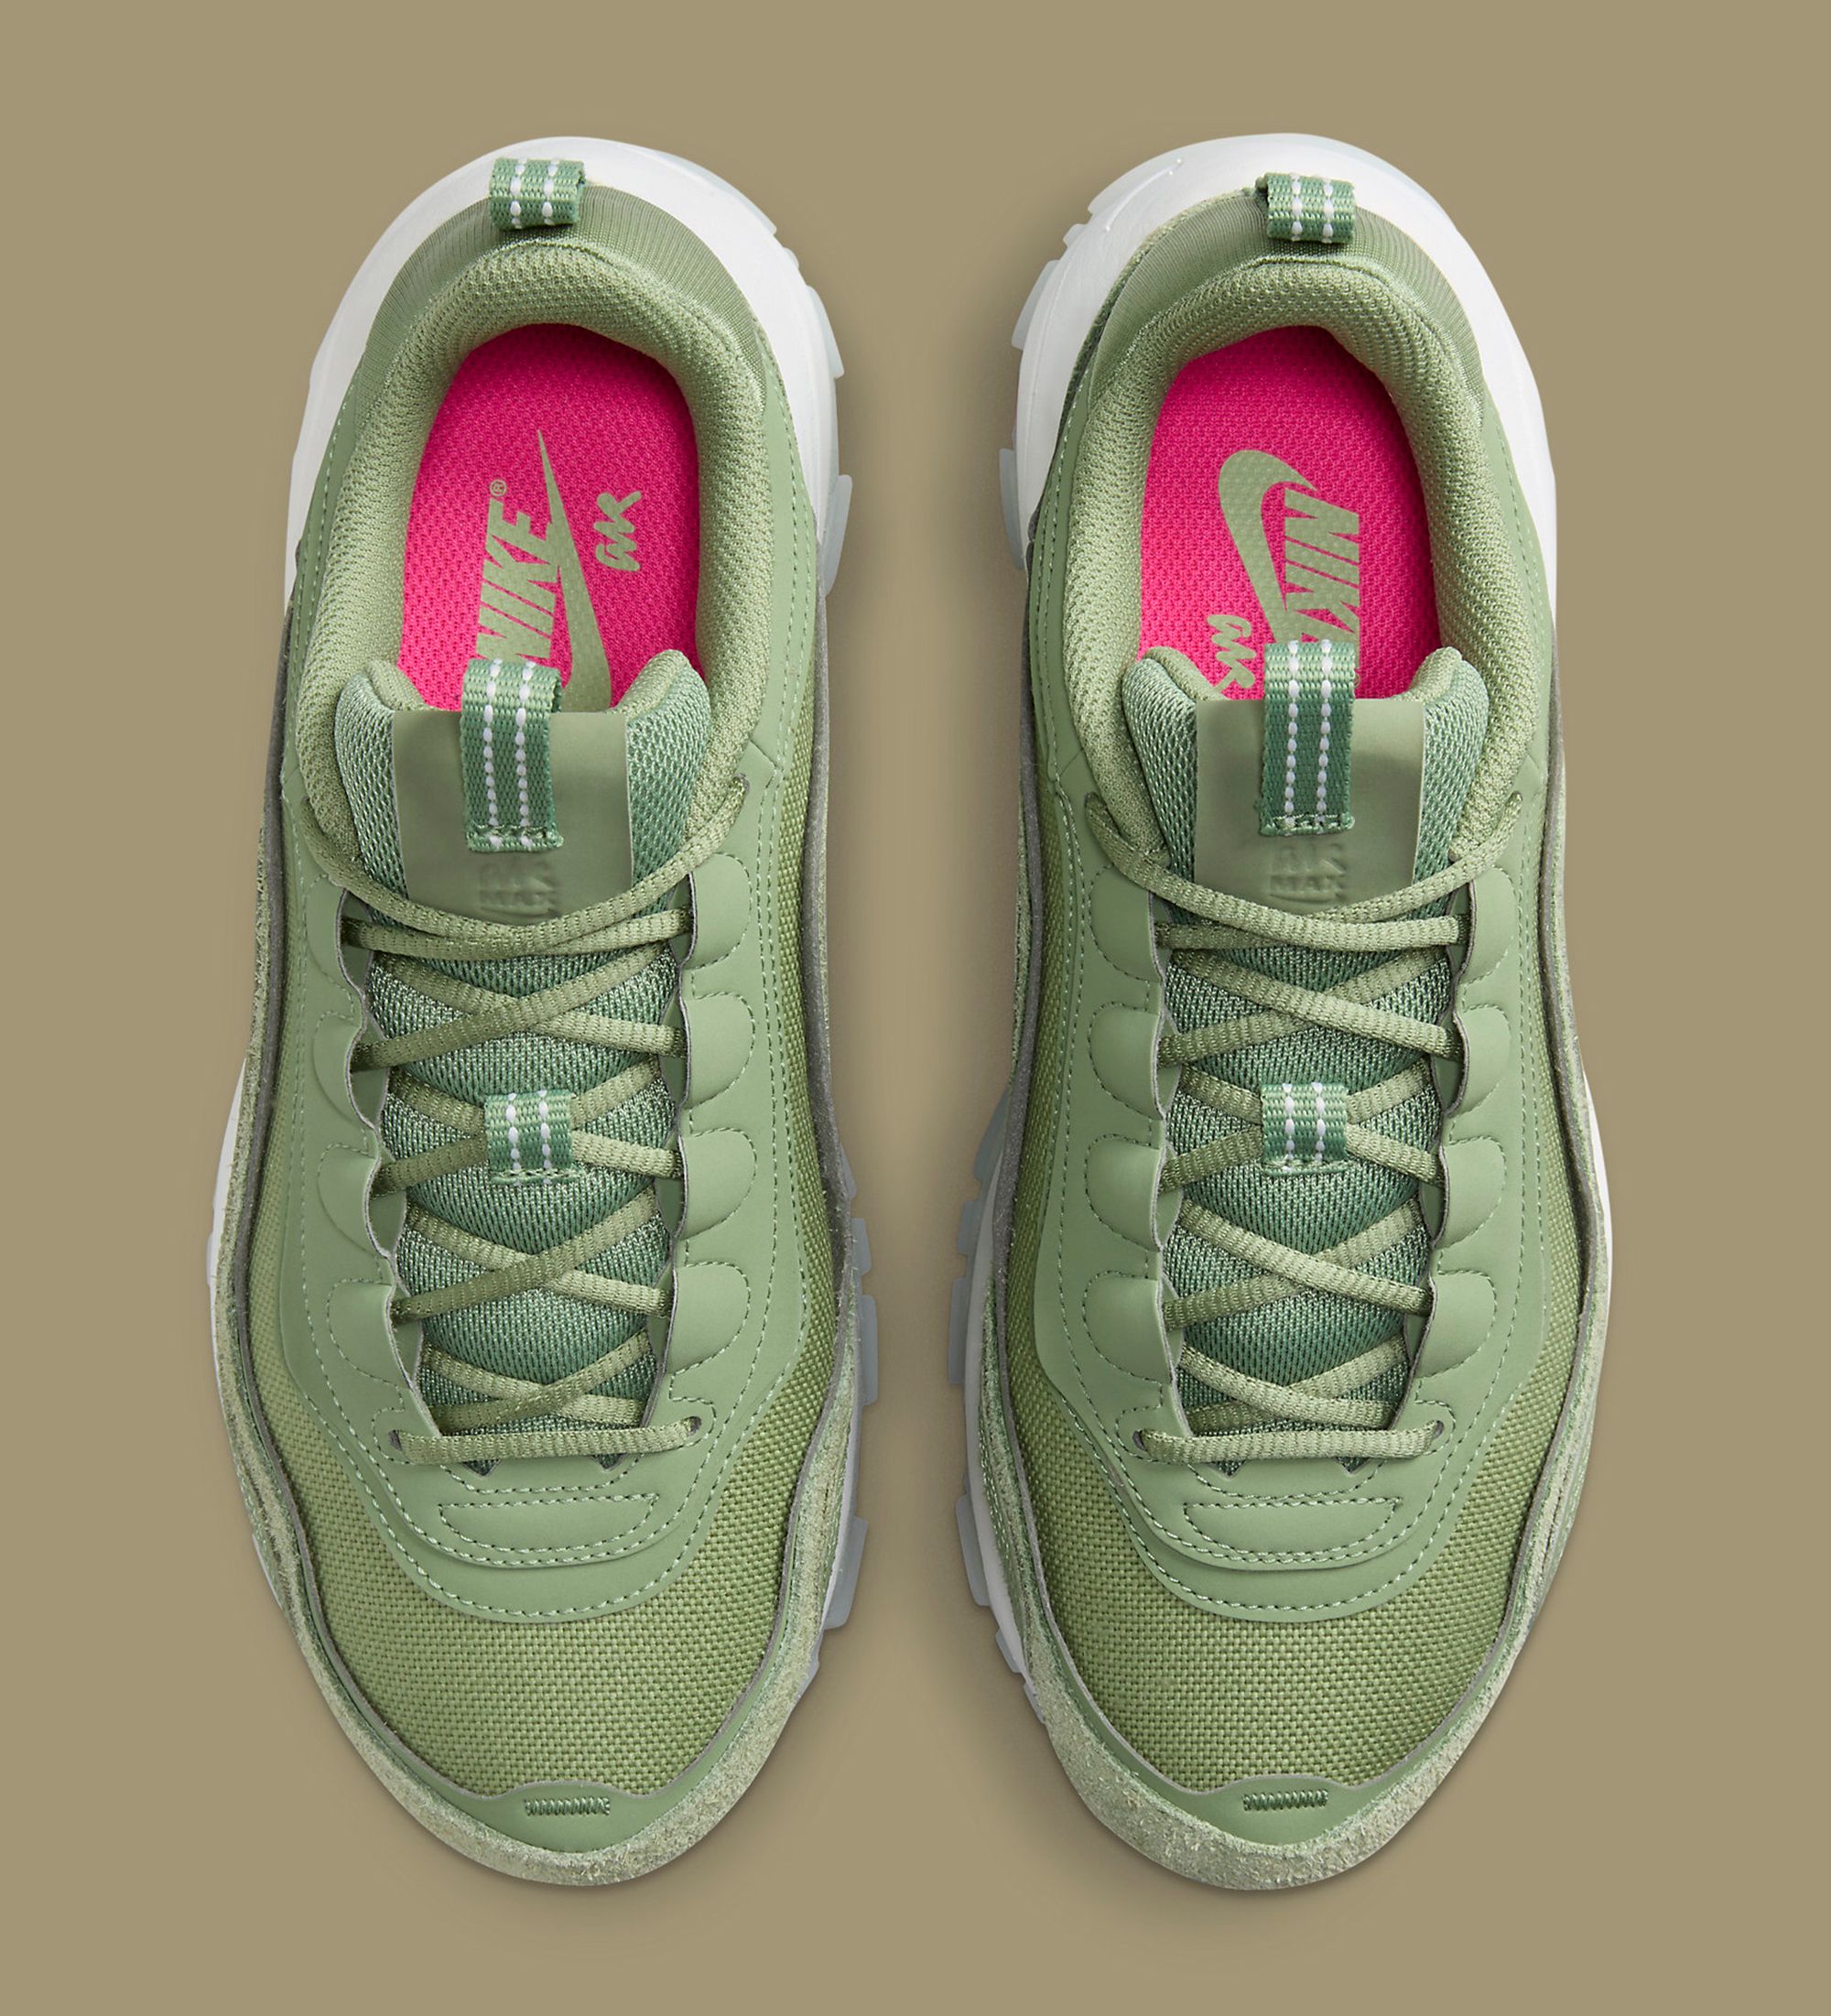 Nike Air Max 97 Futura Release Date